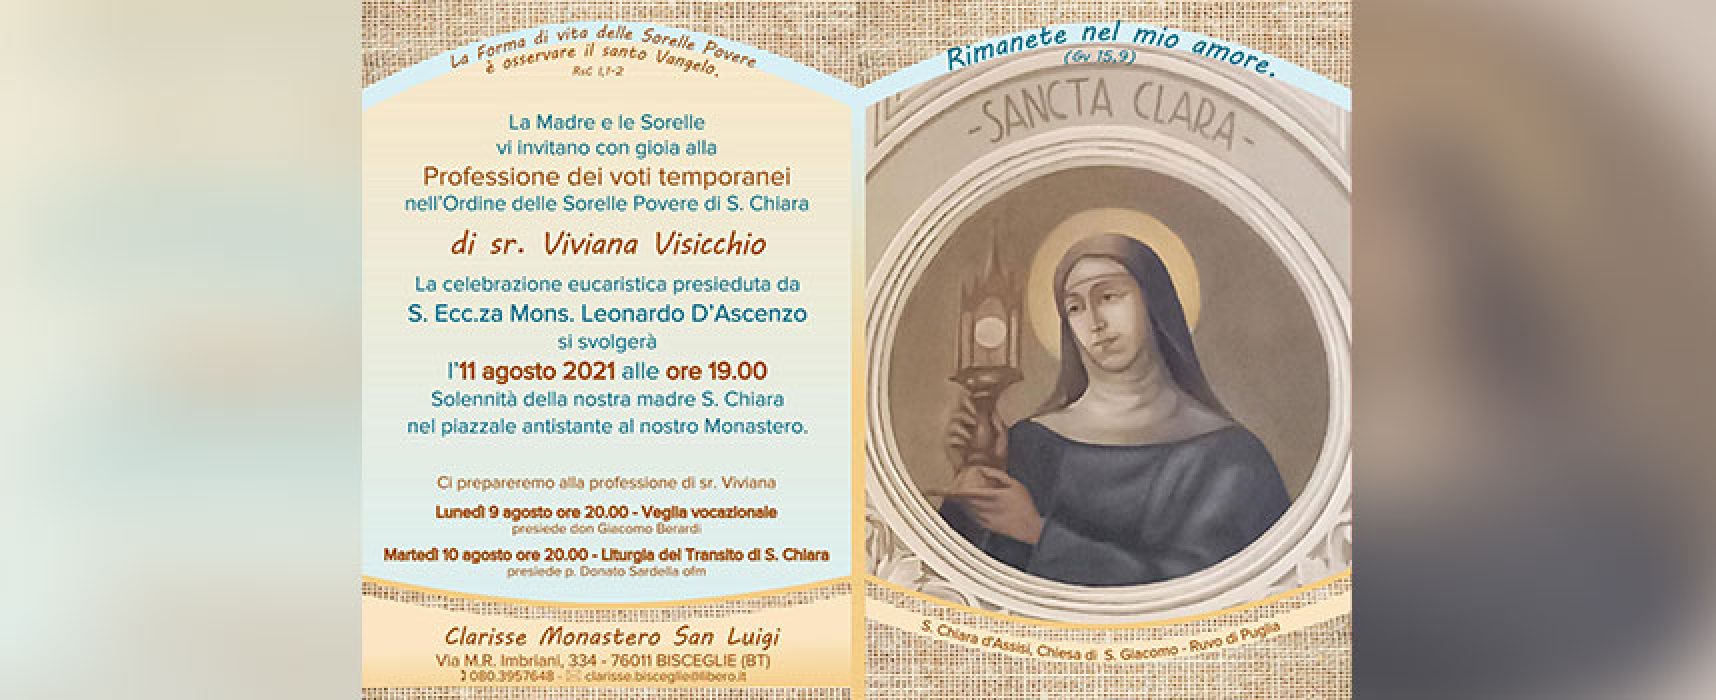 Al Monastero di San Luigi professione temporanea a suor Viviana e festa per Santa Chiara